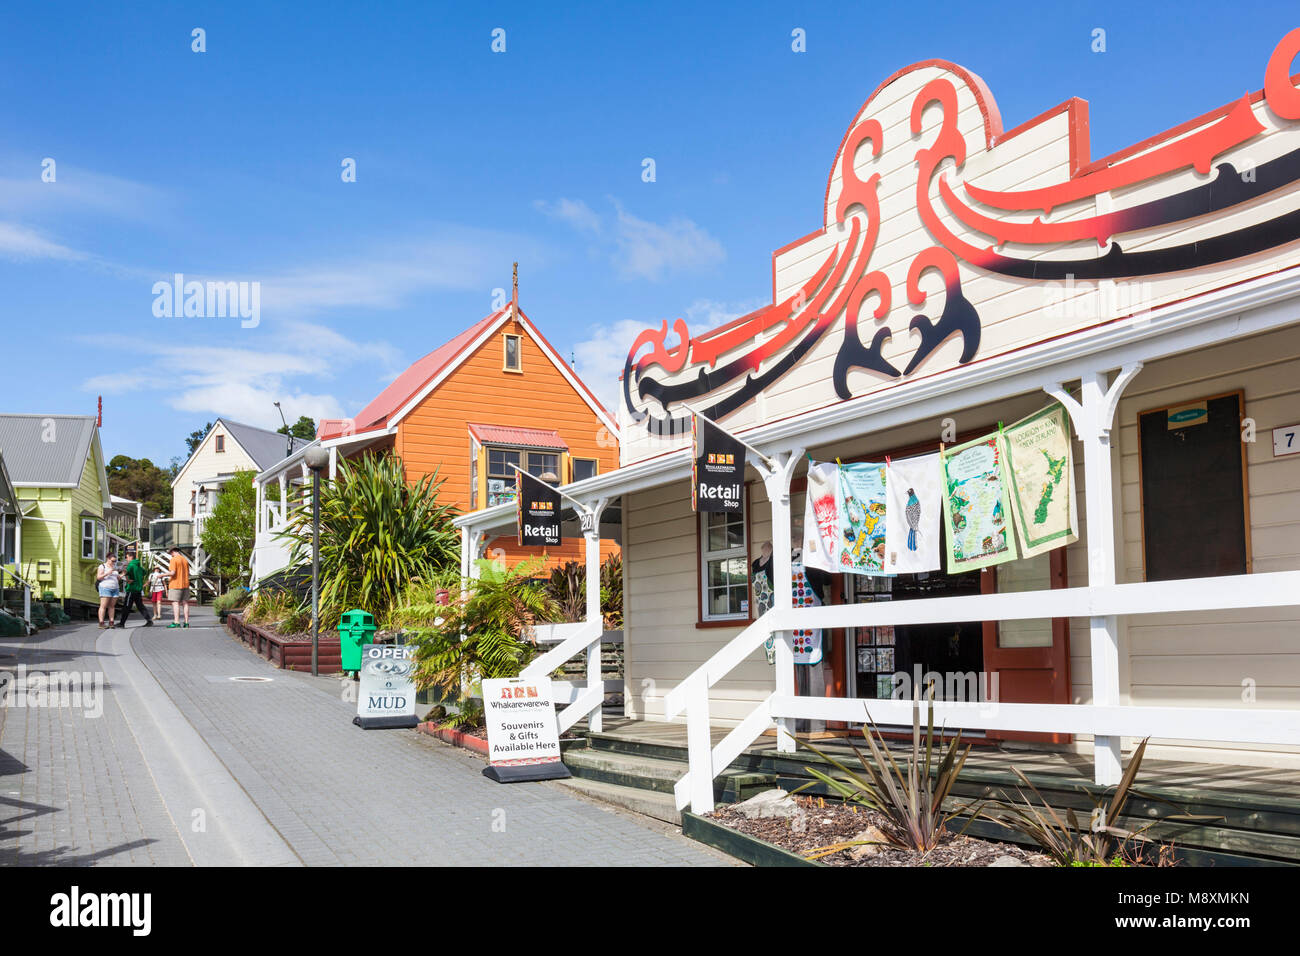 Nouvelle zélande Rotorua Nouvelle zélande Rotorua whakarewarewa village maori vivant boutique de souvenirs de l'île du nord de Nouvelle-Zélande La Nouvelle-Zélande Océanie Banque D'Images